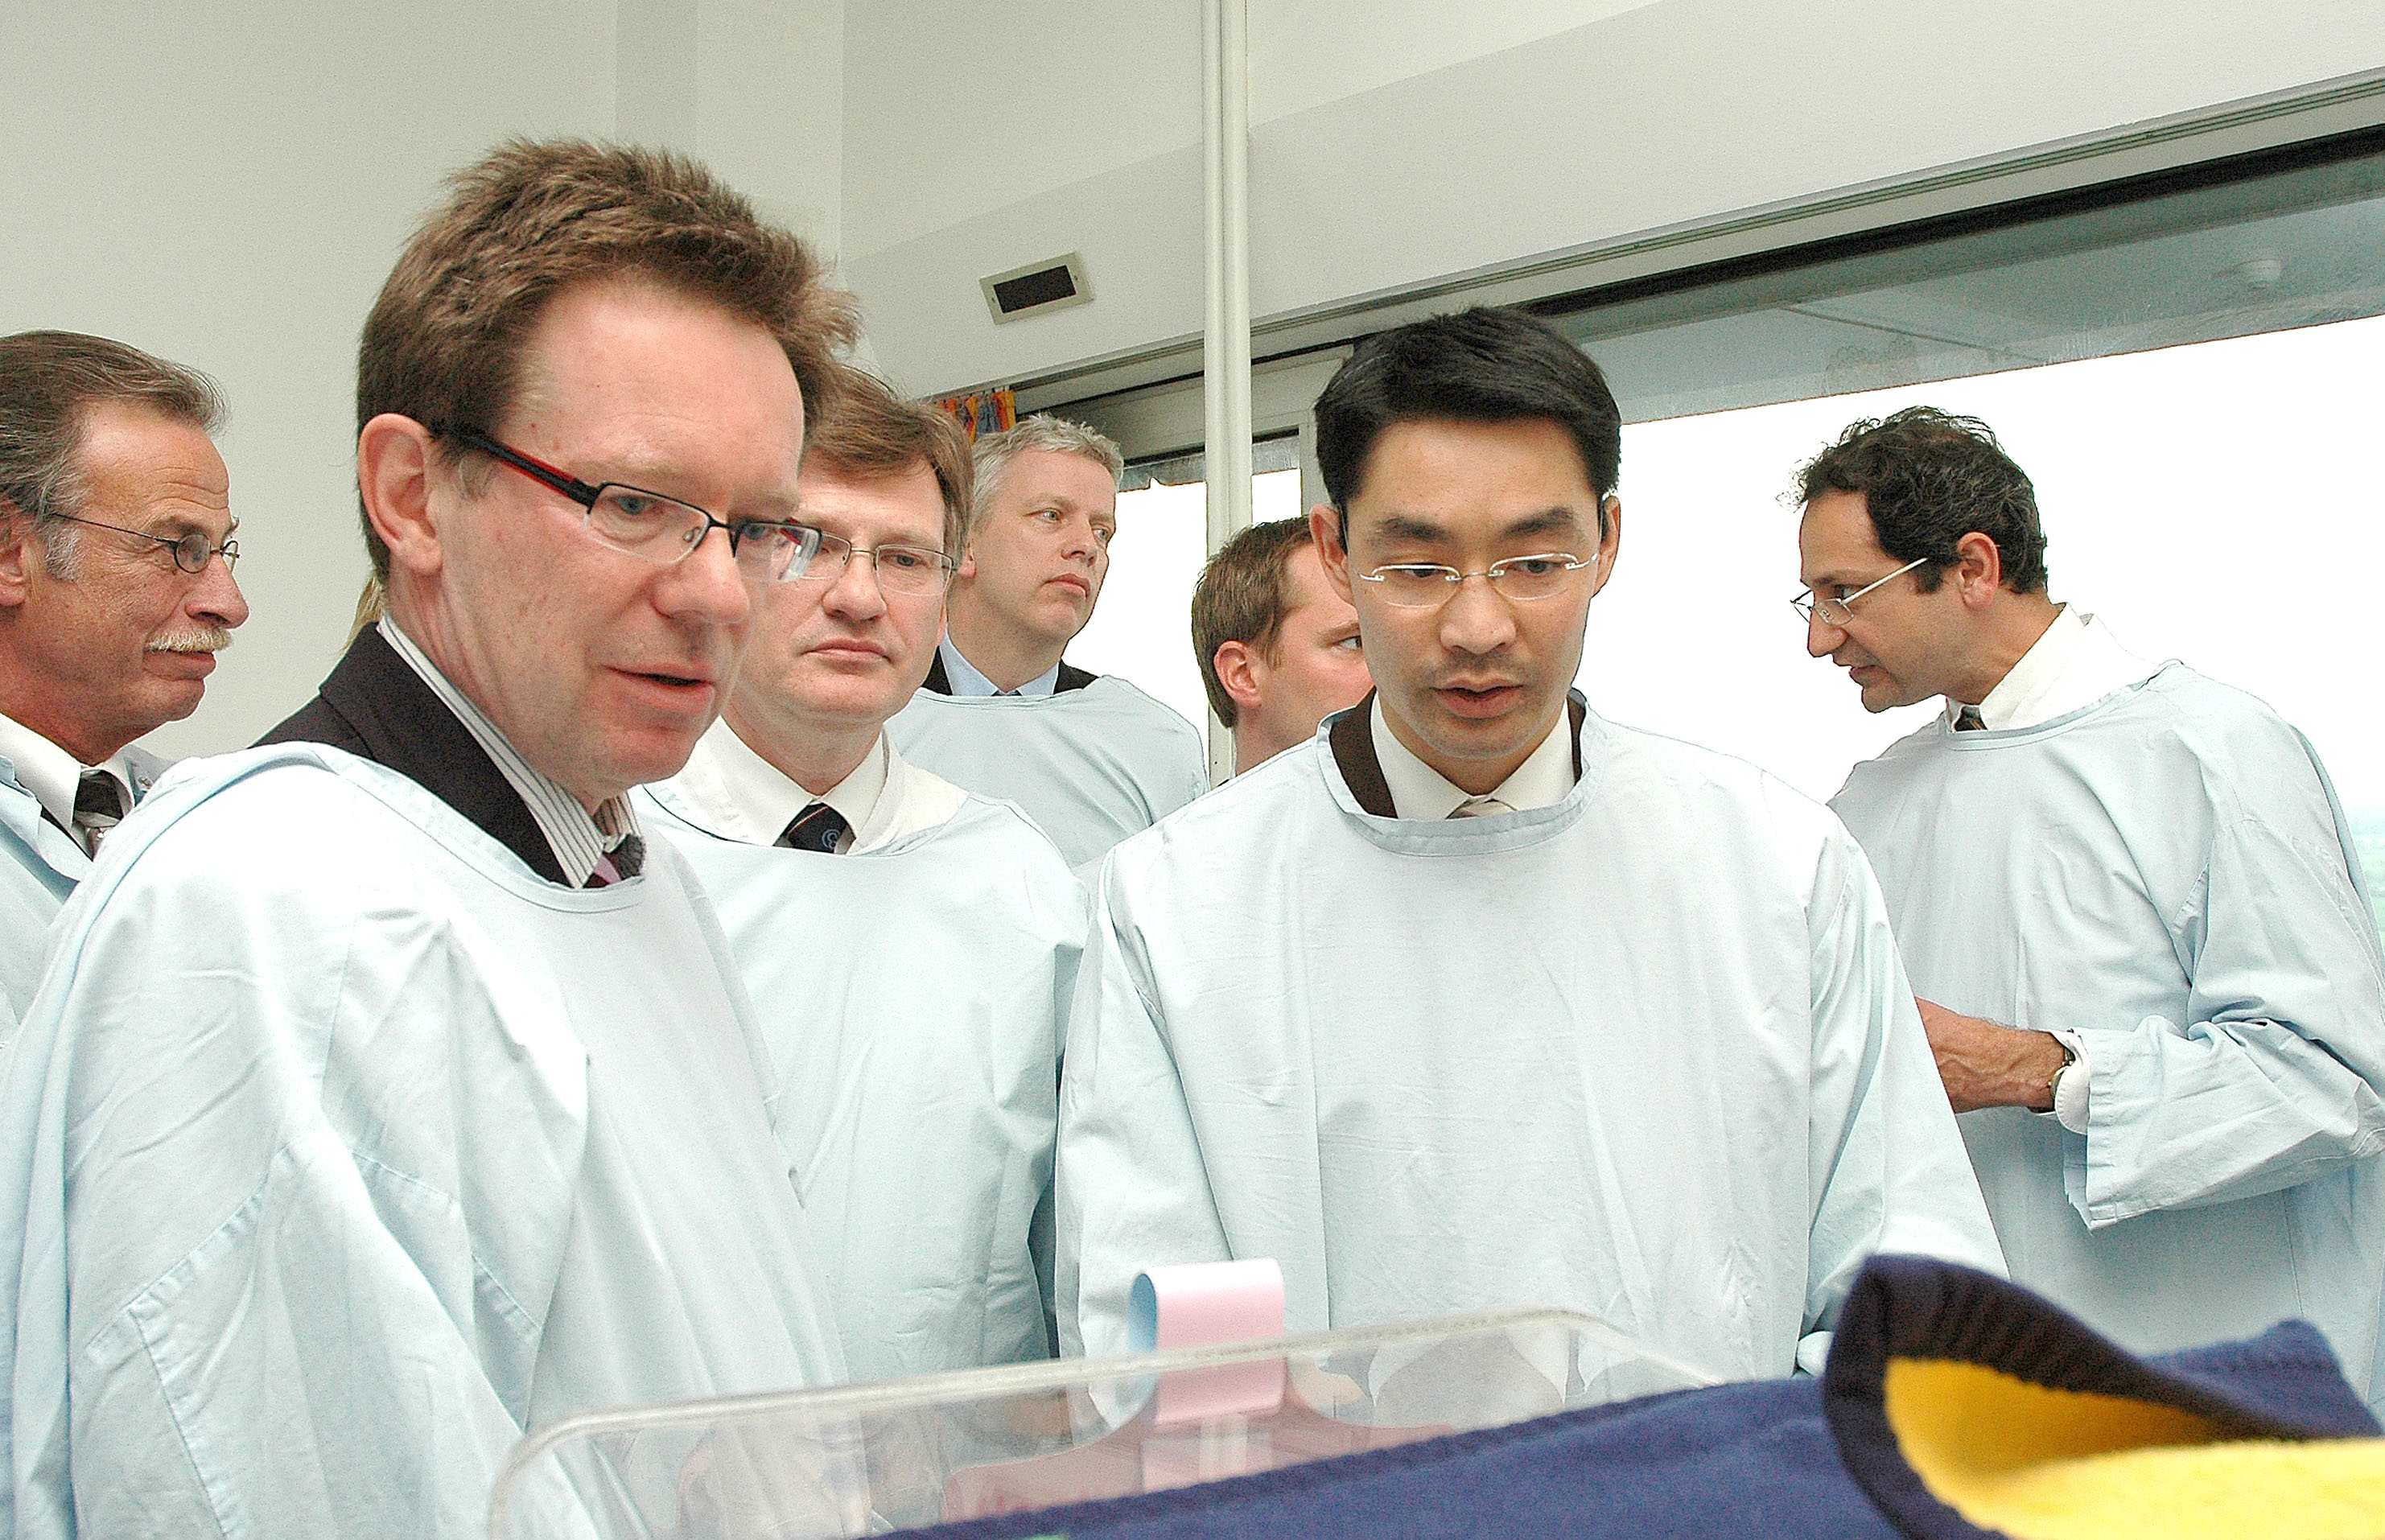 Bundesgesundheitsminister Dr. Philipp Rösler (2.v.r.) und Prof. Dr. Norbert Roeder, Vorstandsvorsitzender und Ärztlicher Direktor am UKM (vorne links).